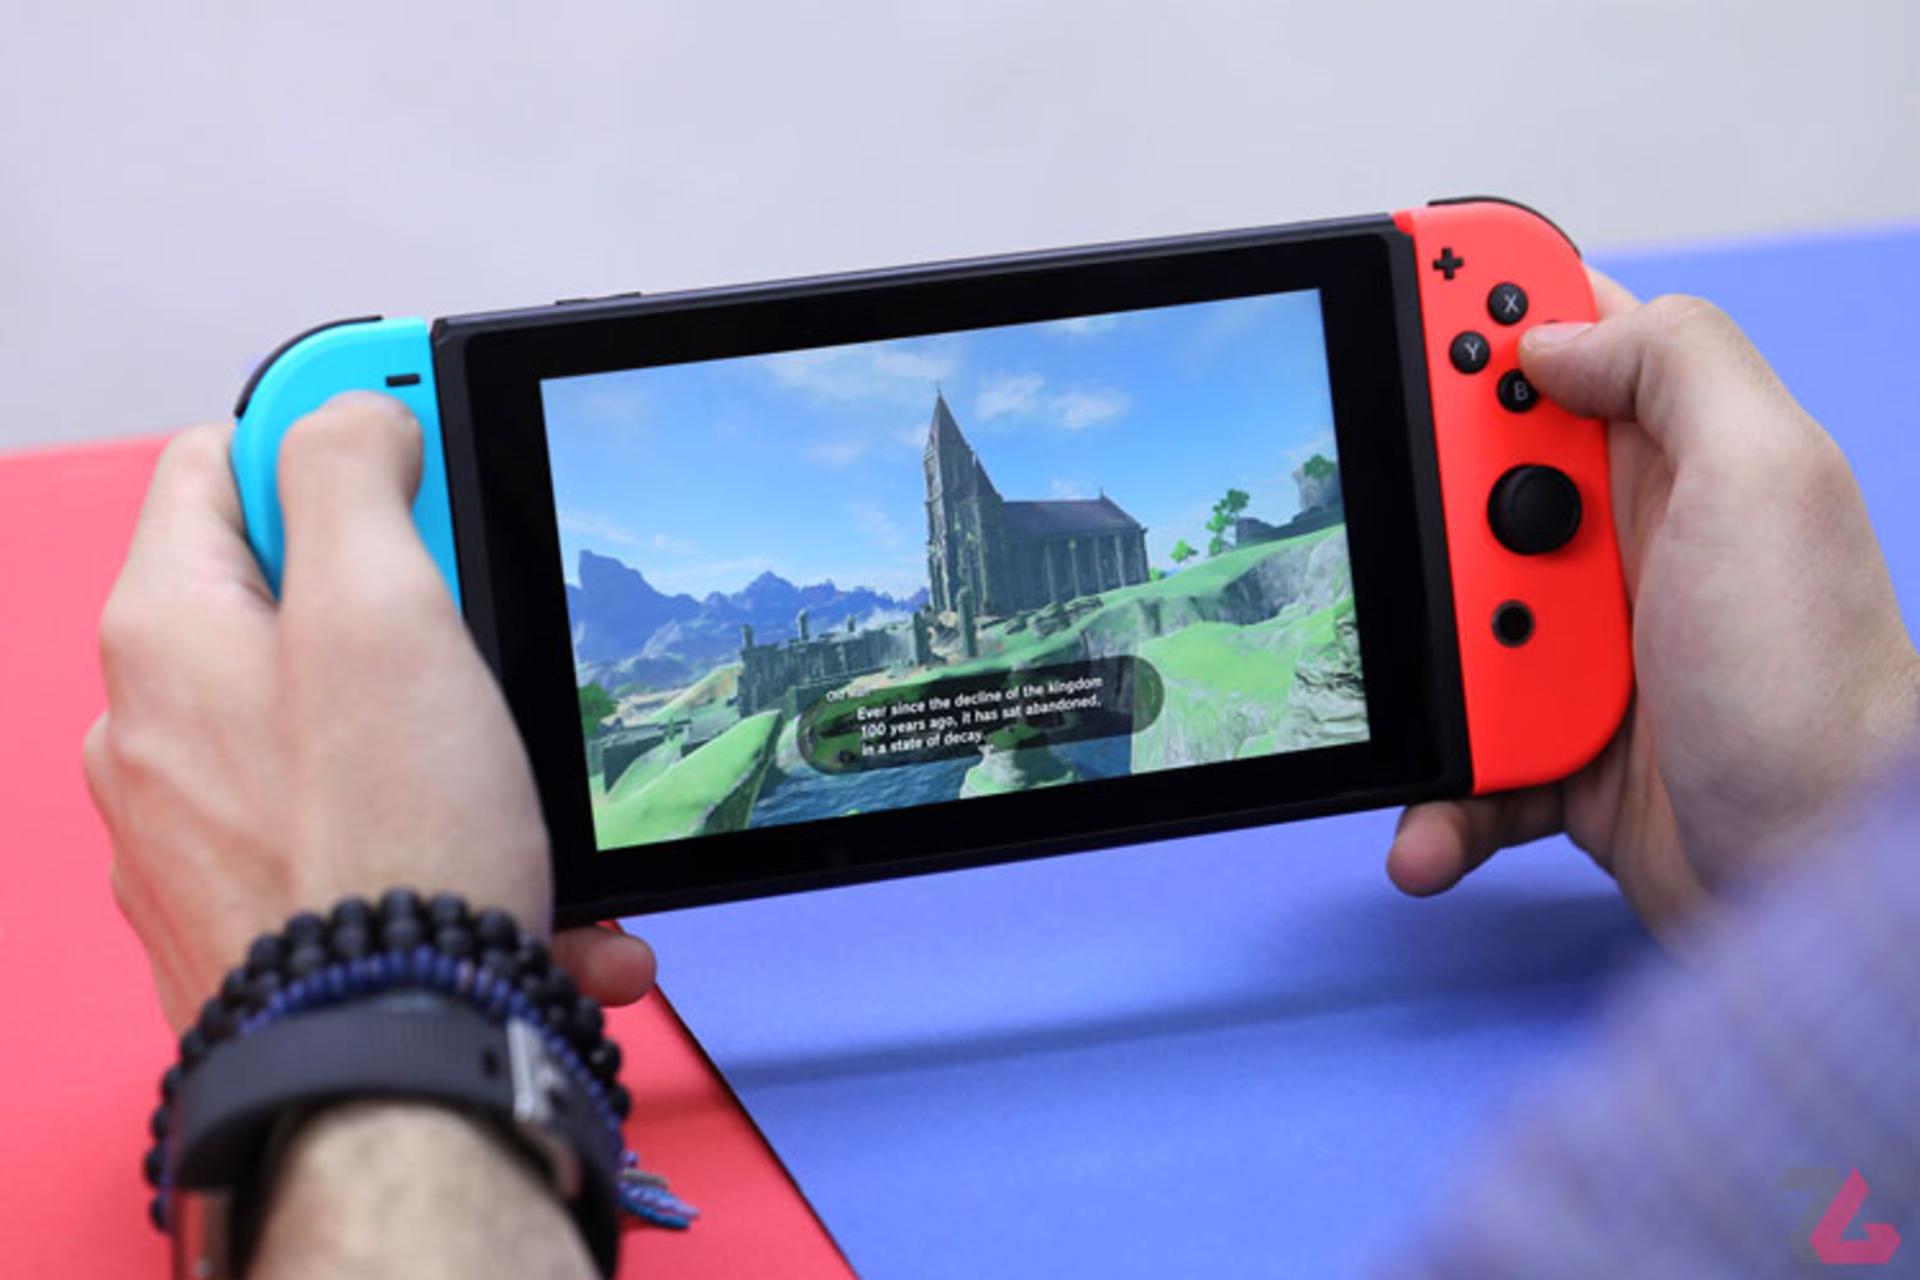 مرجع متخصصين ايران نينتندو سوييچ / Nintendo Switch در دست